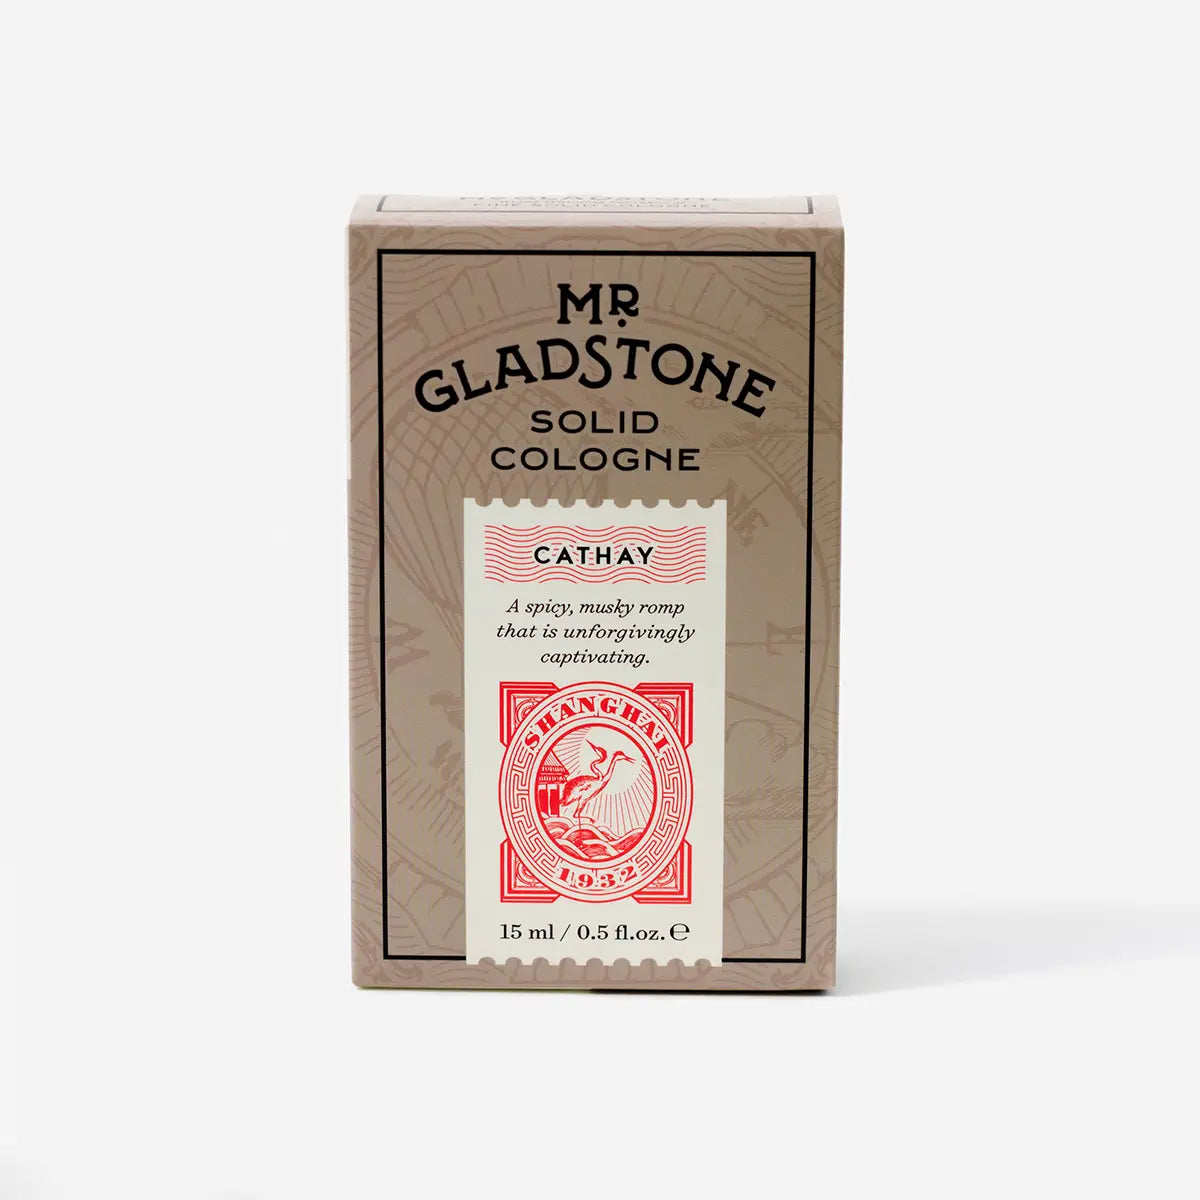 Mr Gladstone Solid Cologne